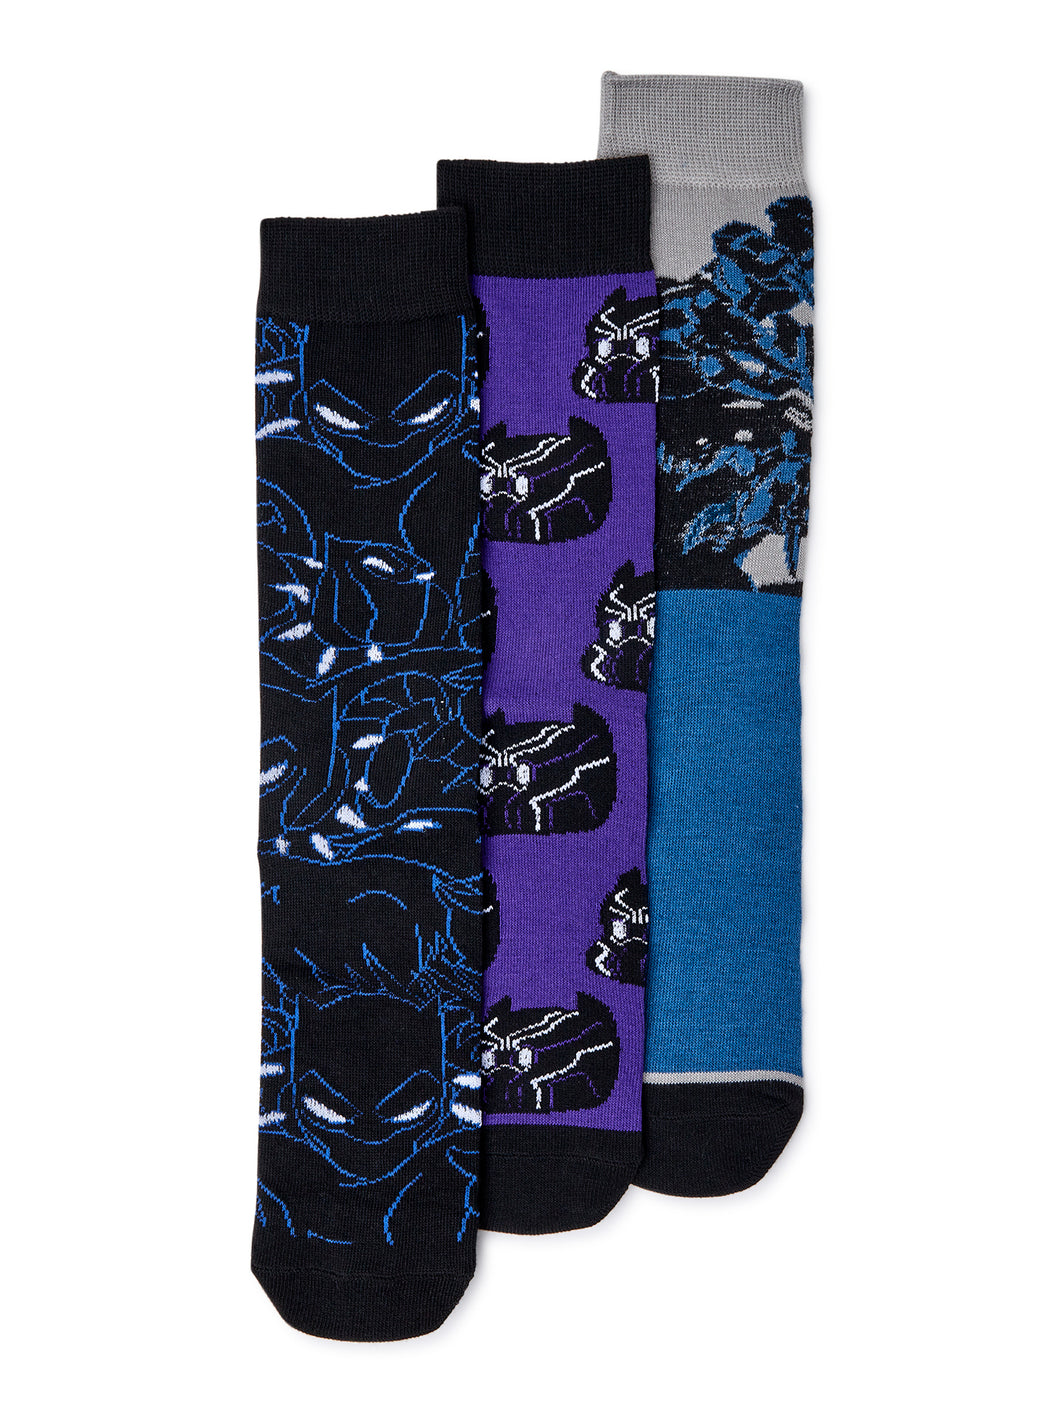 Black Panther Men's Socks, 3-Pack